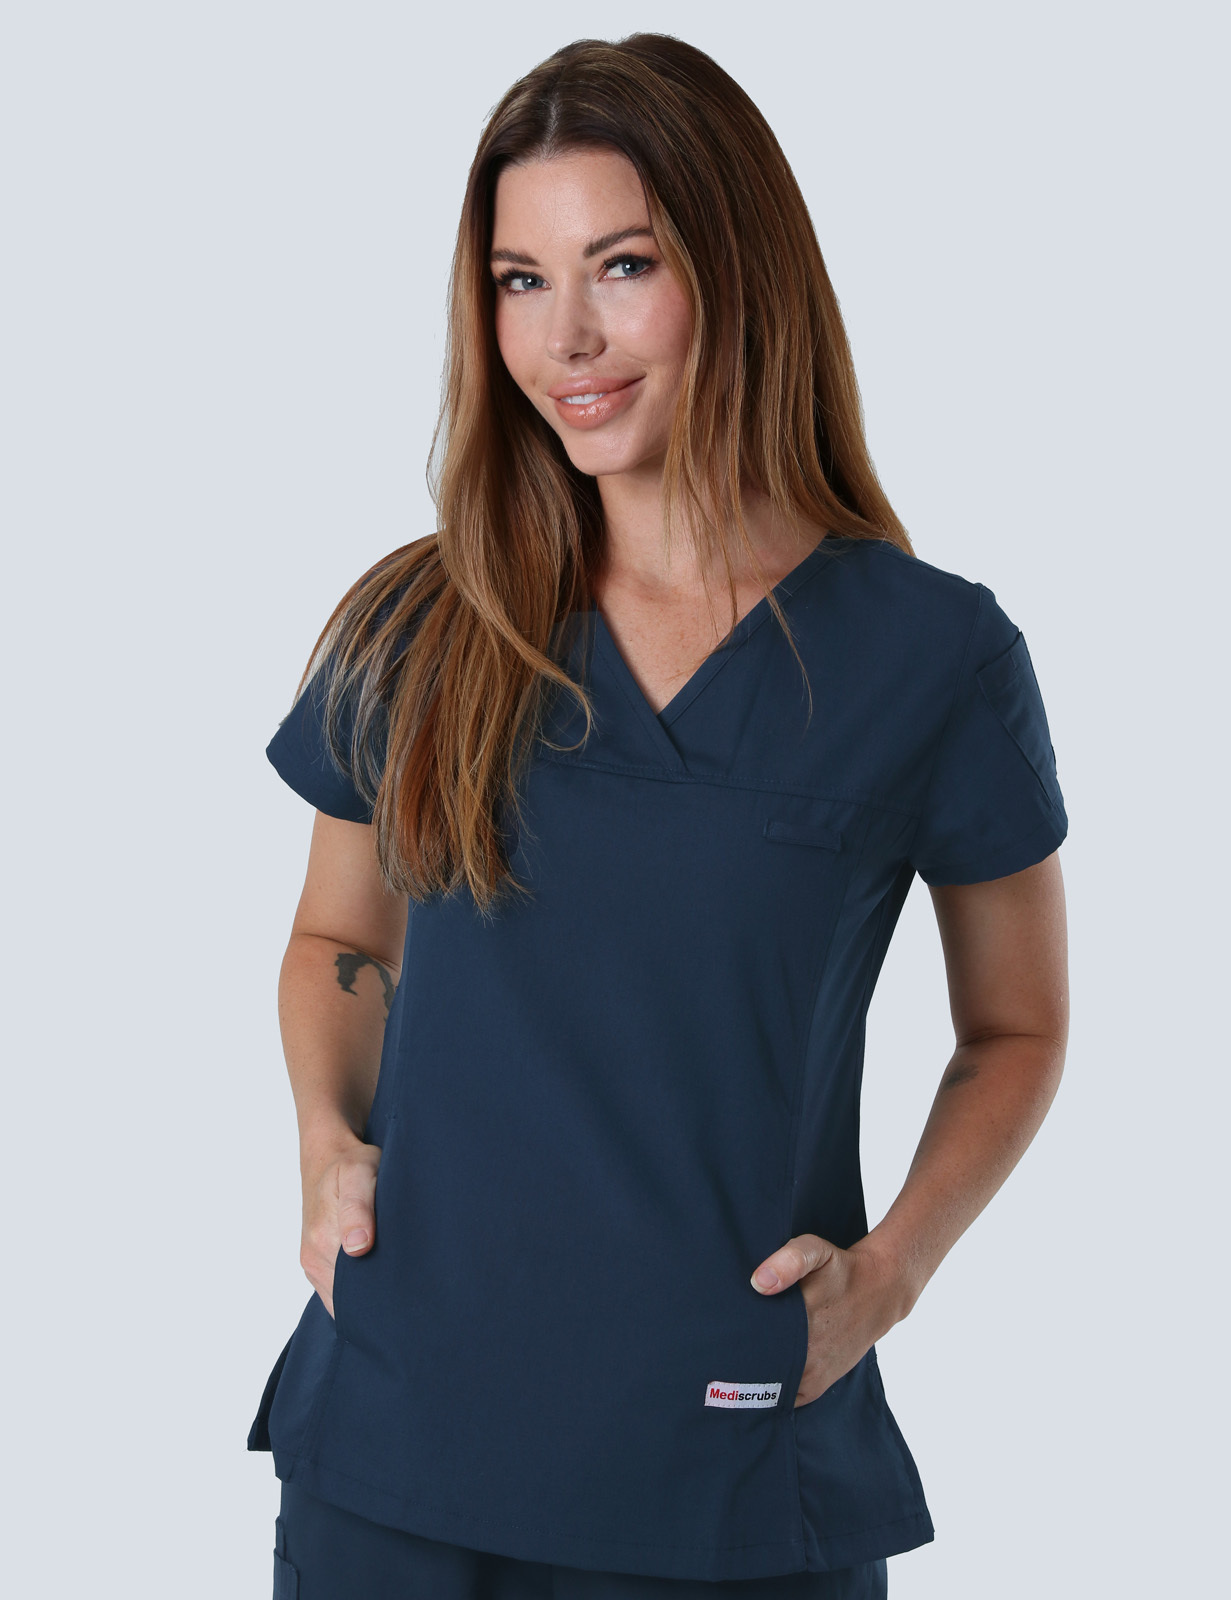 Queensland Children's Hospital Emergency Department Nurse Practitioner Uniform Top Bundle  (Women's Fit Top in Navy incl Logos)